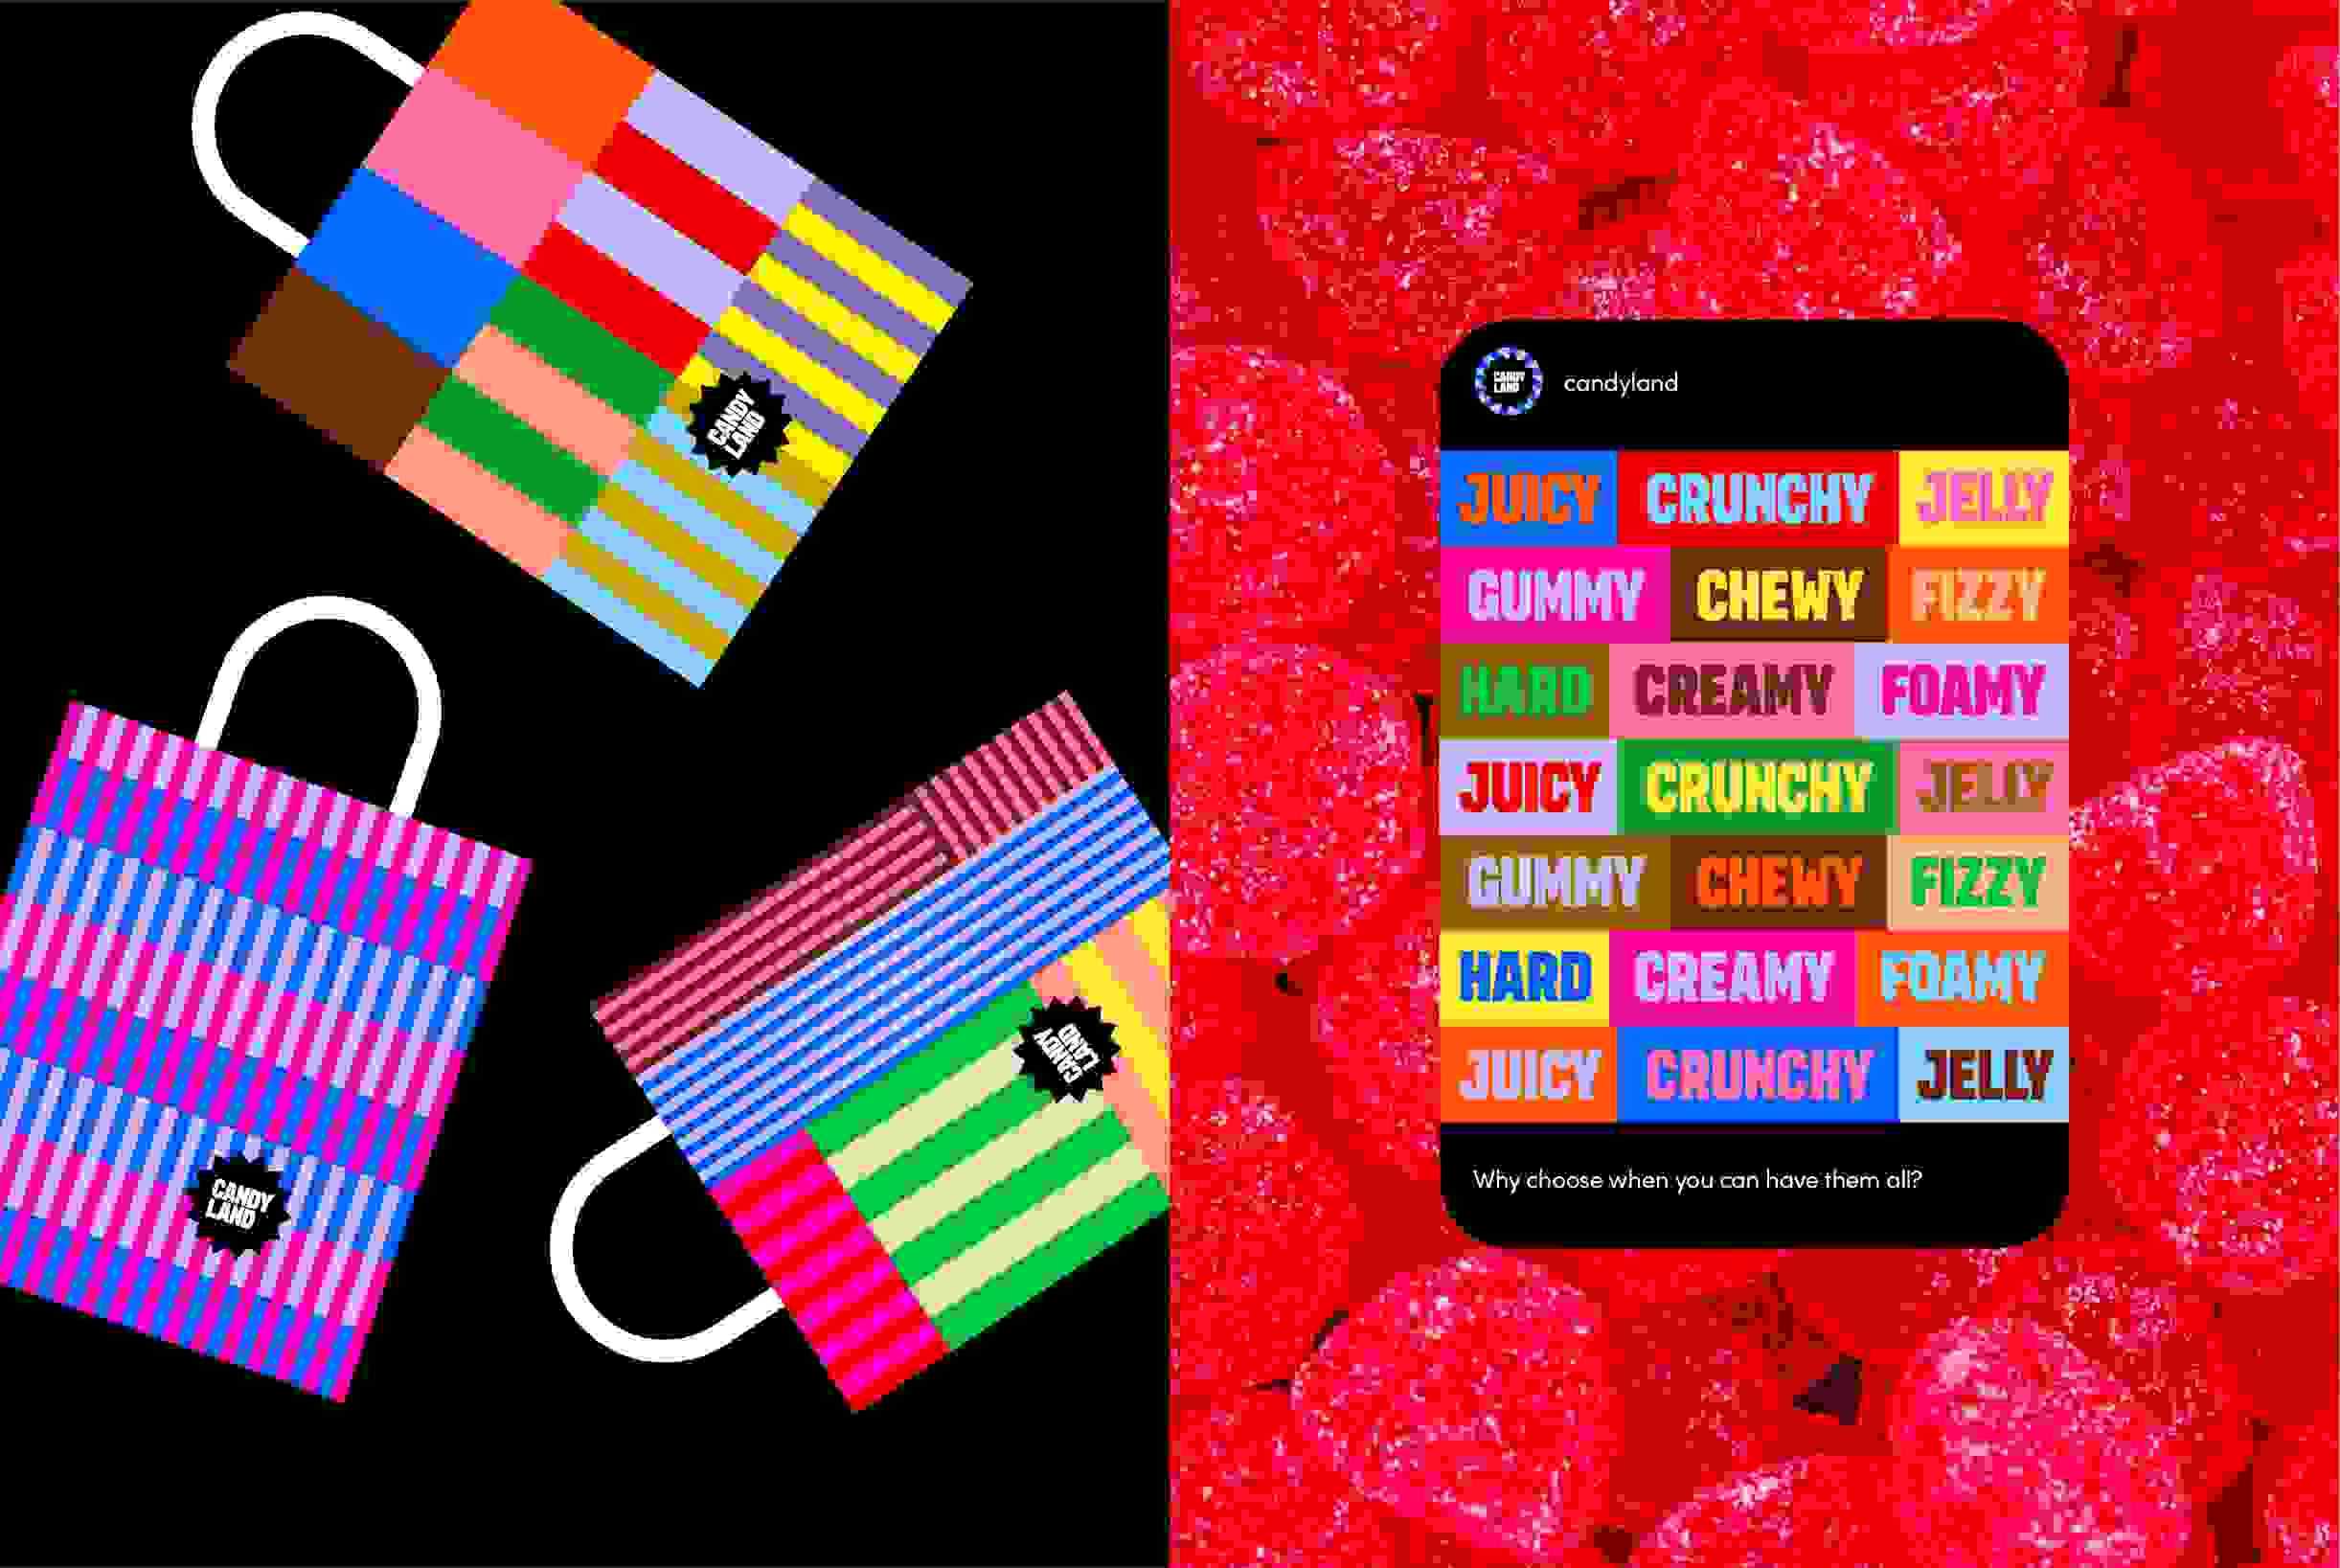 A Candyland bag and social media post visualisation